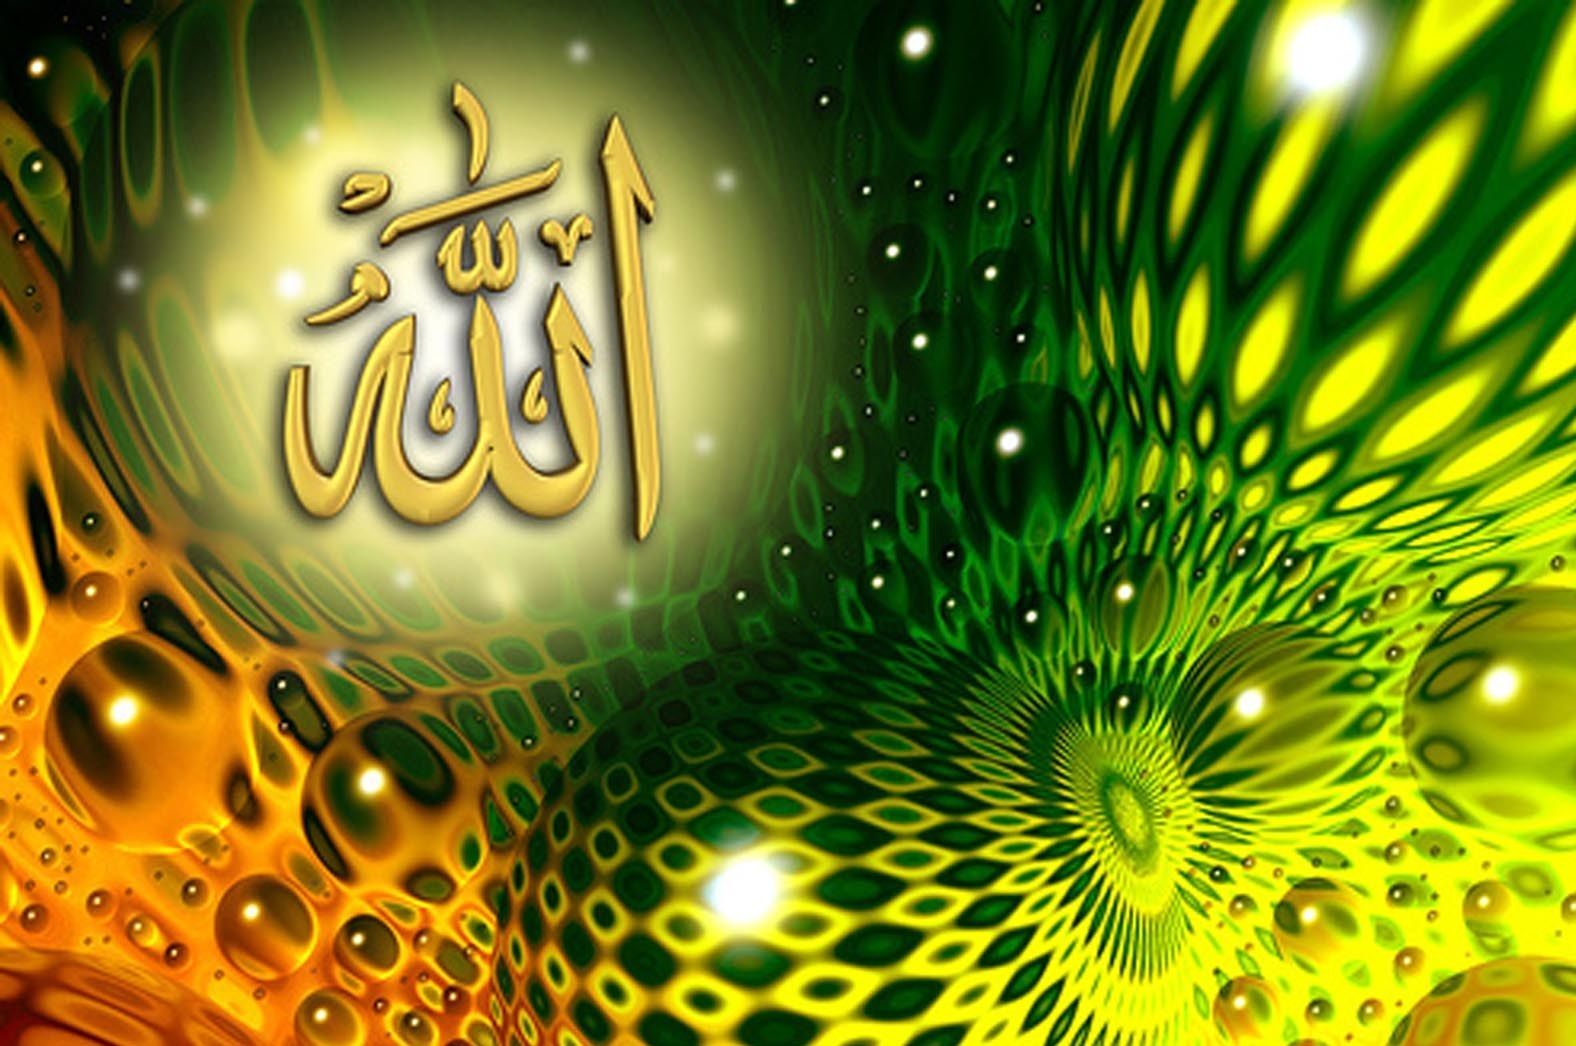 Beautiful Allah Name HD Wallpaper Image